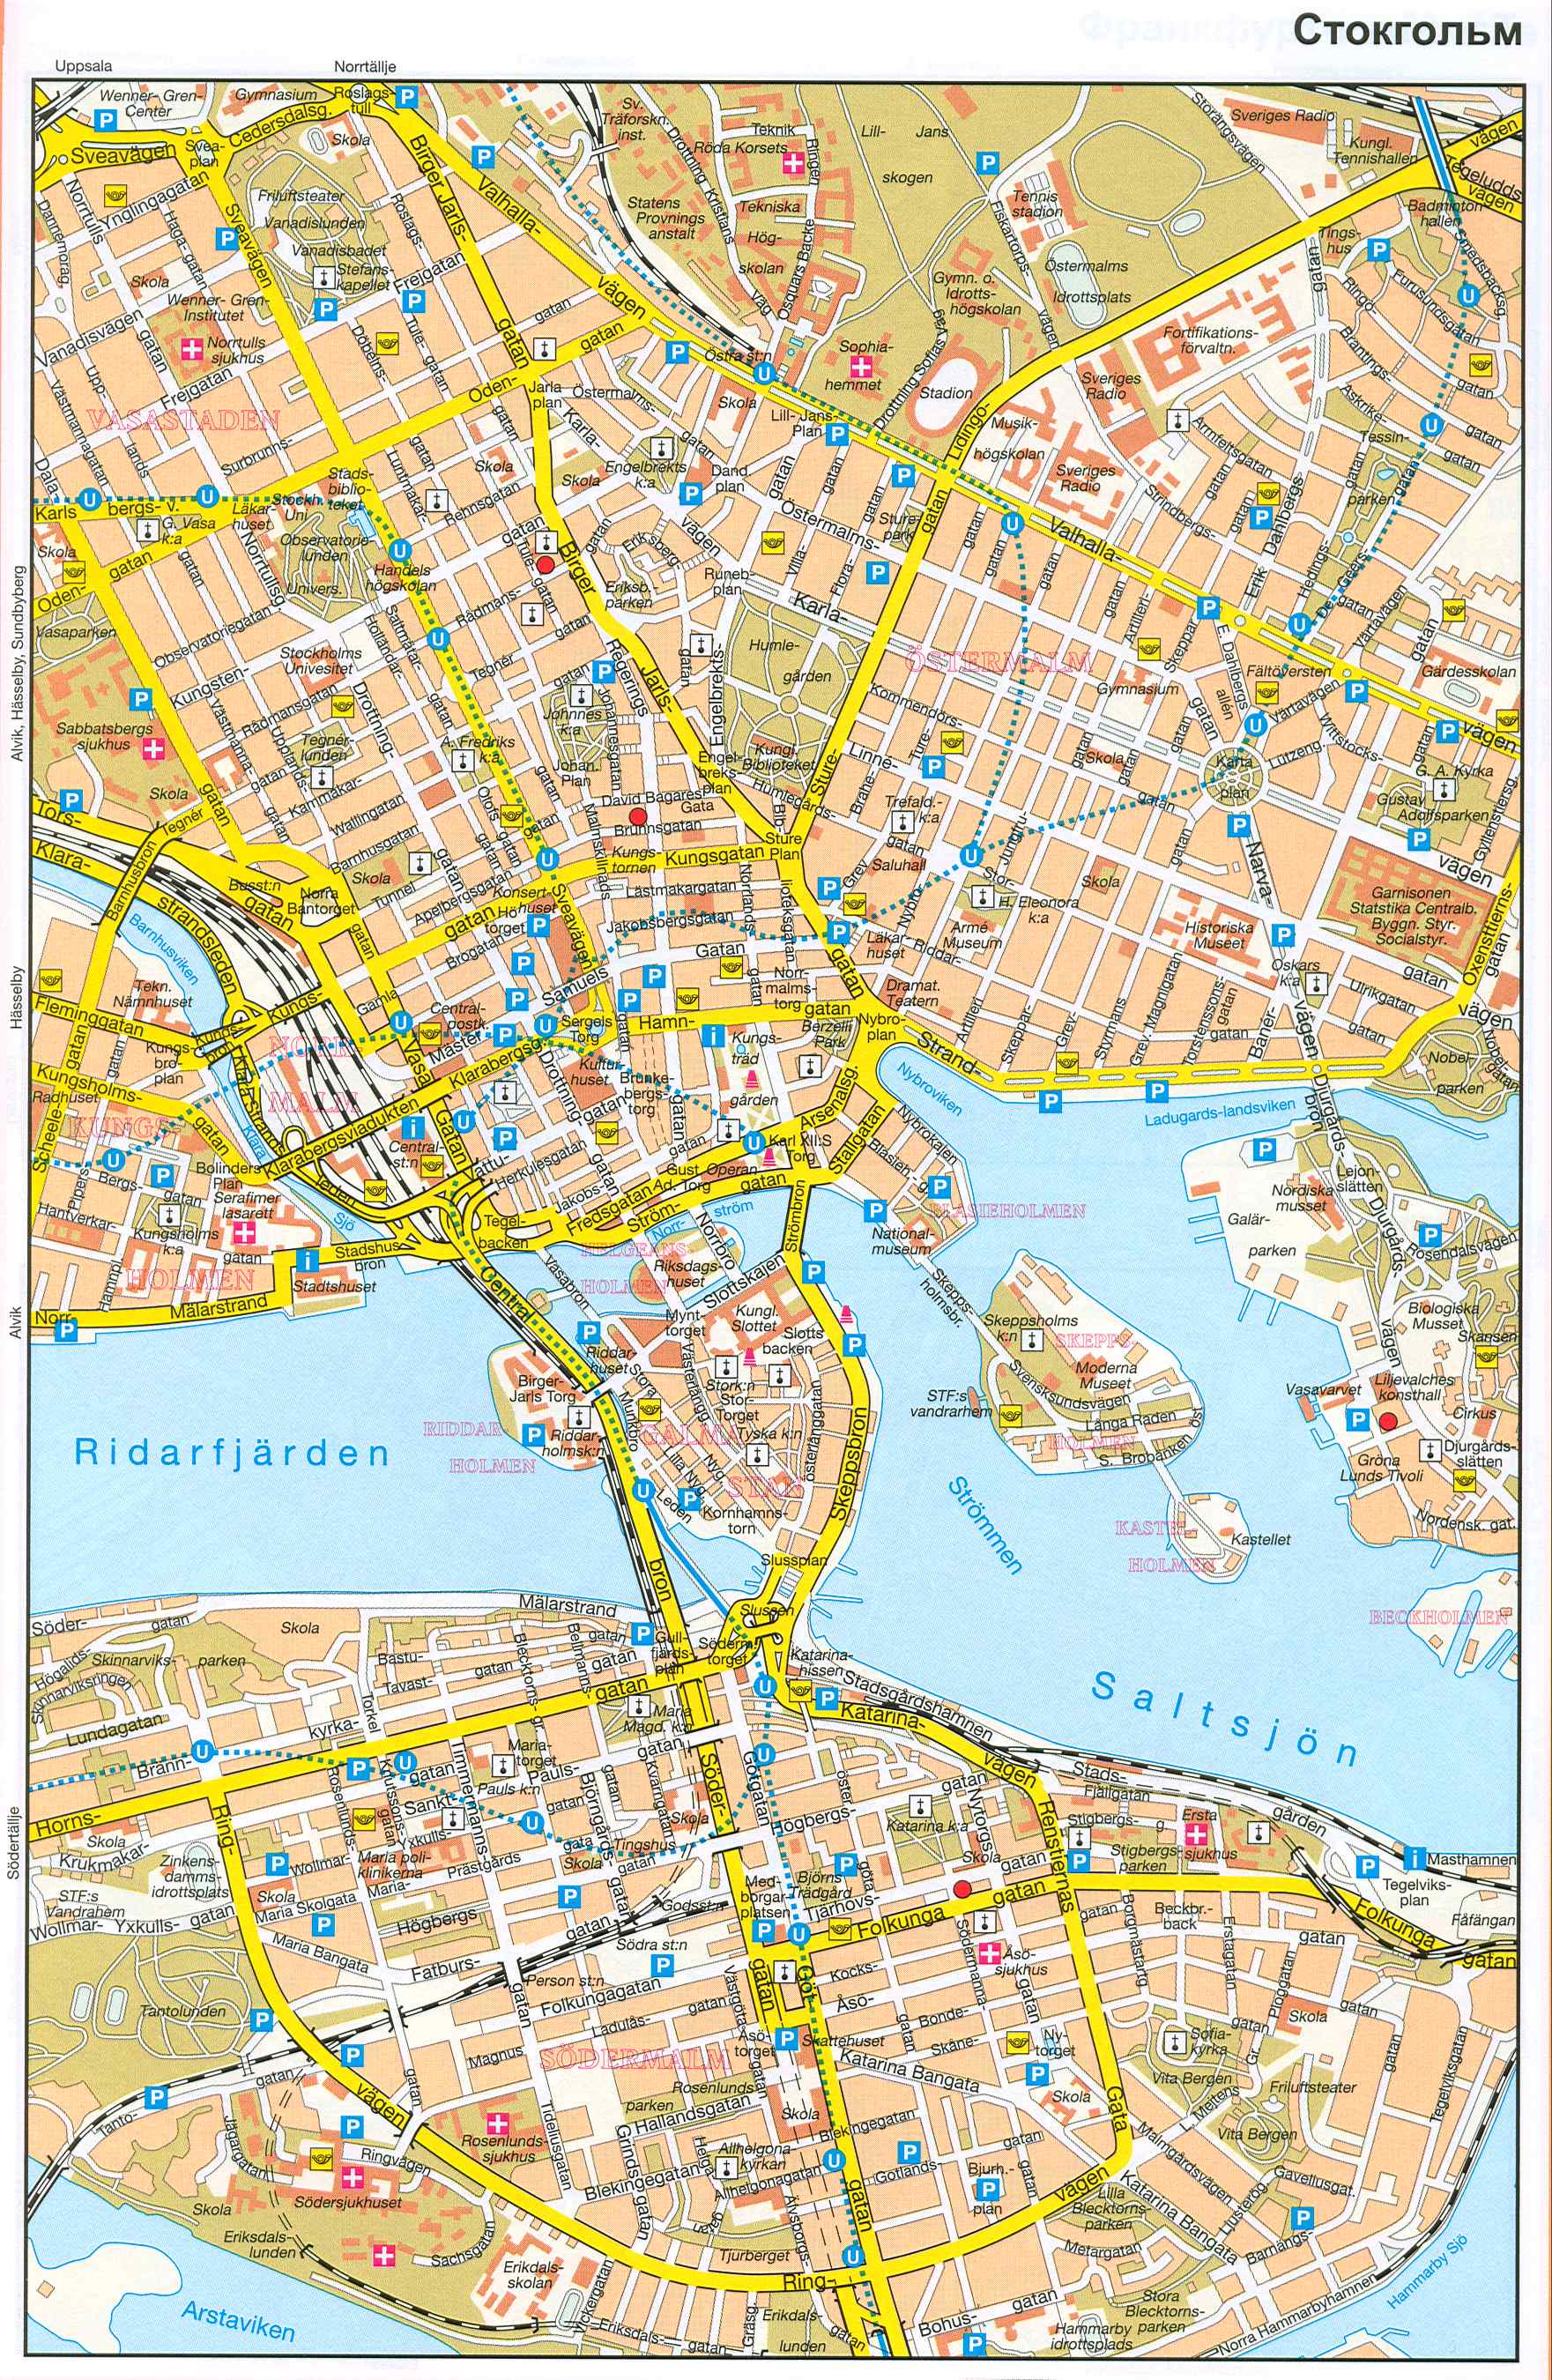 Швеция, карта Стокгольма. Карта центра города Стокгольма - столицы Швеции - со схемой проезда автотранспорта, A0 - 